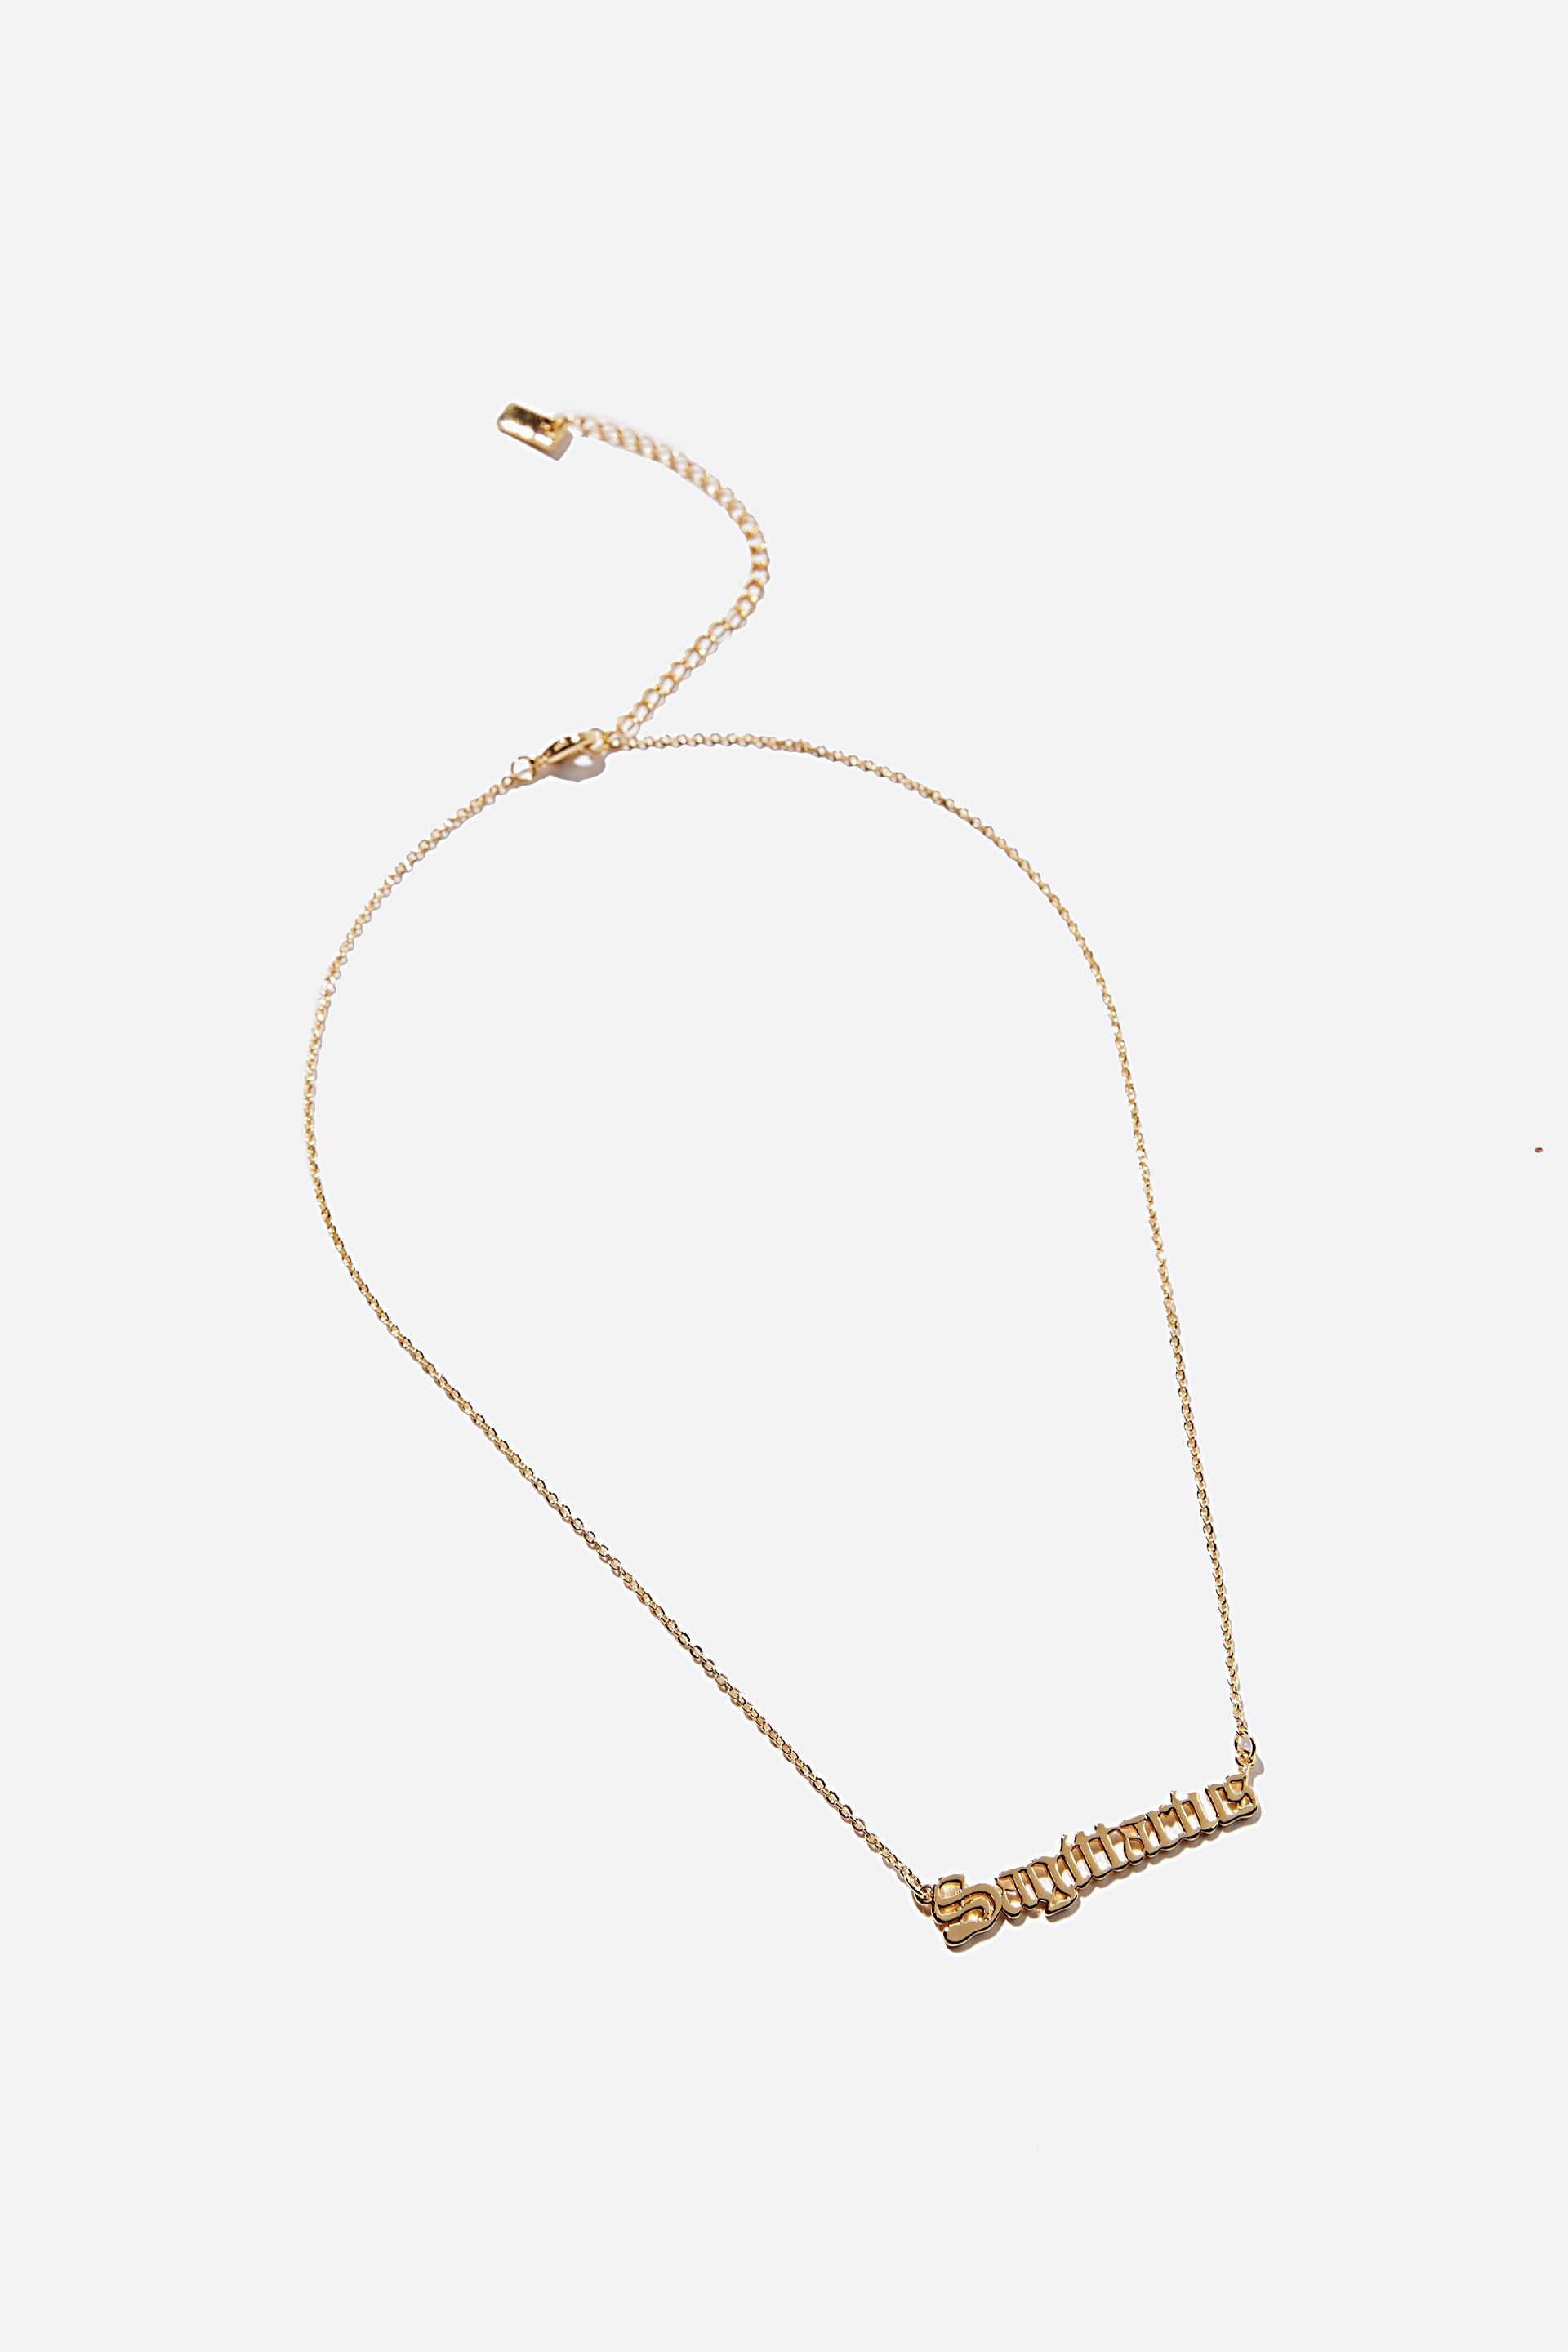 Rubi - Premium Pendant Necklace - Gold plated sagittarius